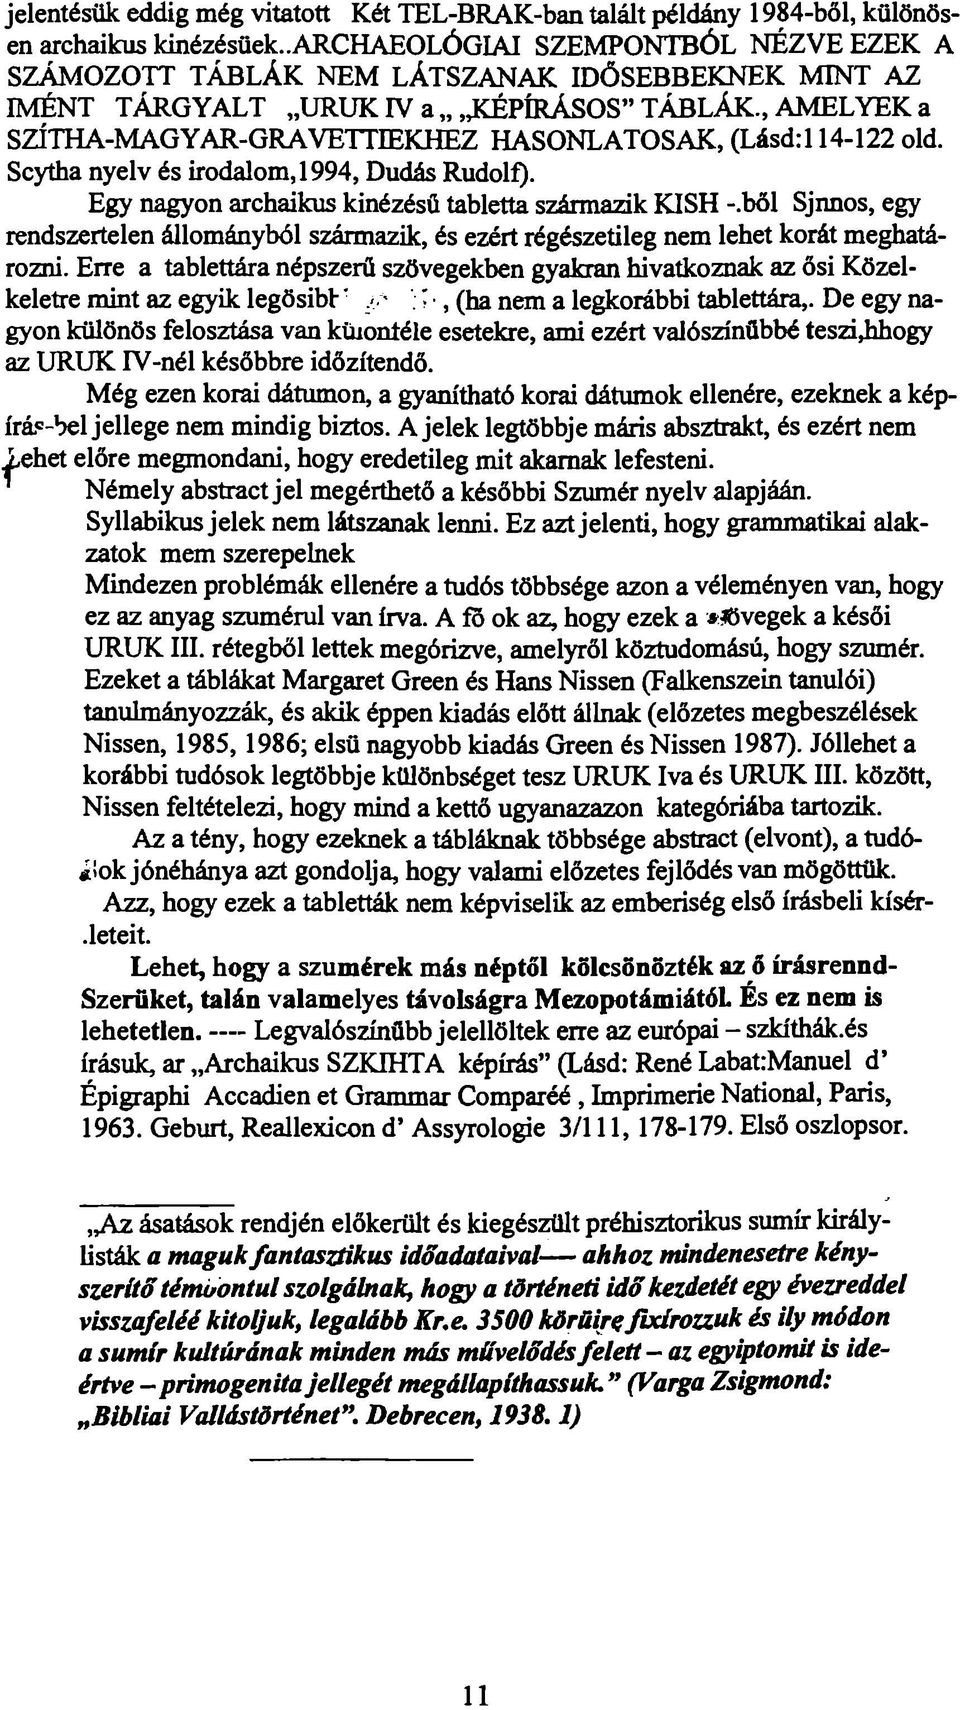 , AMELYEK a SZÍTHA-MAGYAR-GRAVETTIEKHEZ HASONLATOSAK, (Lásd:114-122 old. Scytha nyelv és irodalom, 1994, Dudás Rudolf). Egy nagyon archaikus kinézésü tabletta származik KISH -.